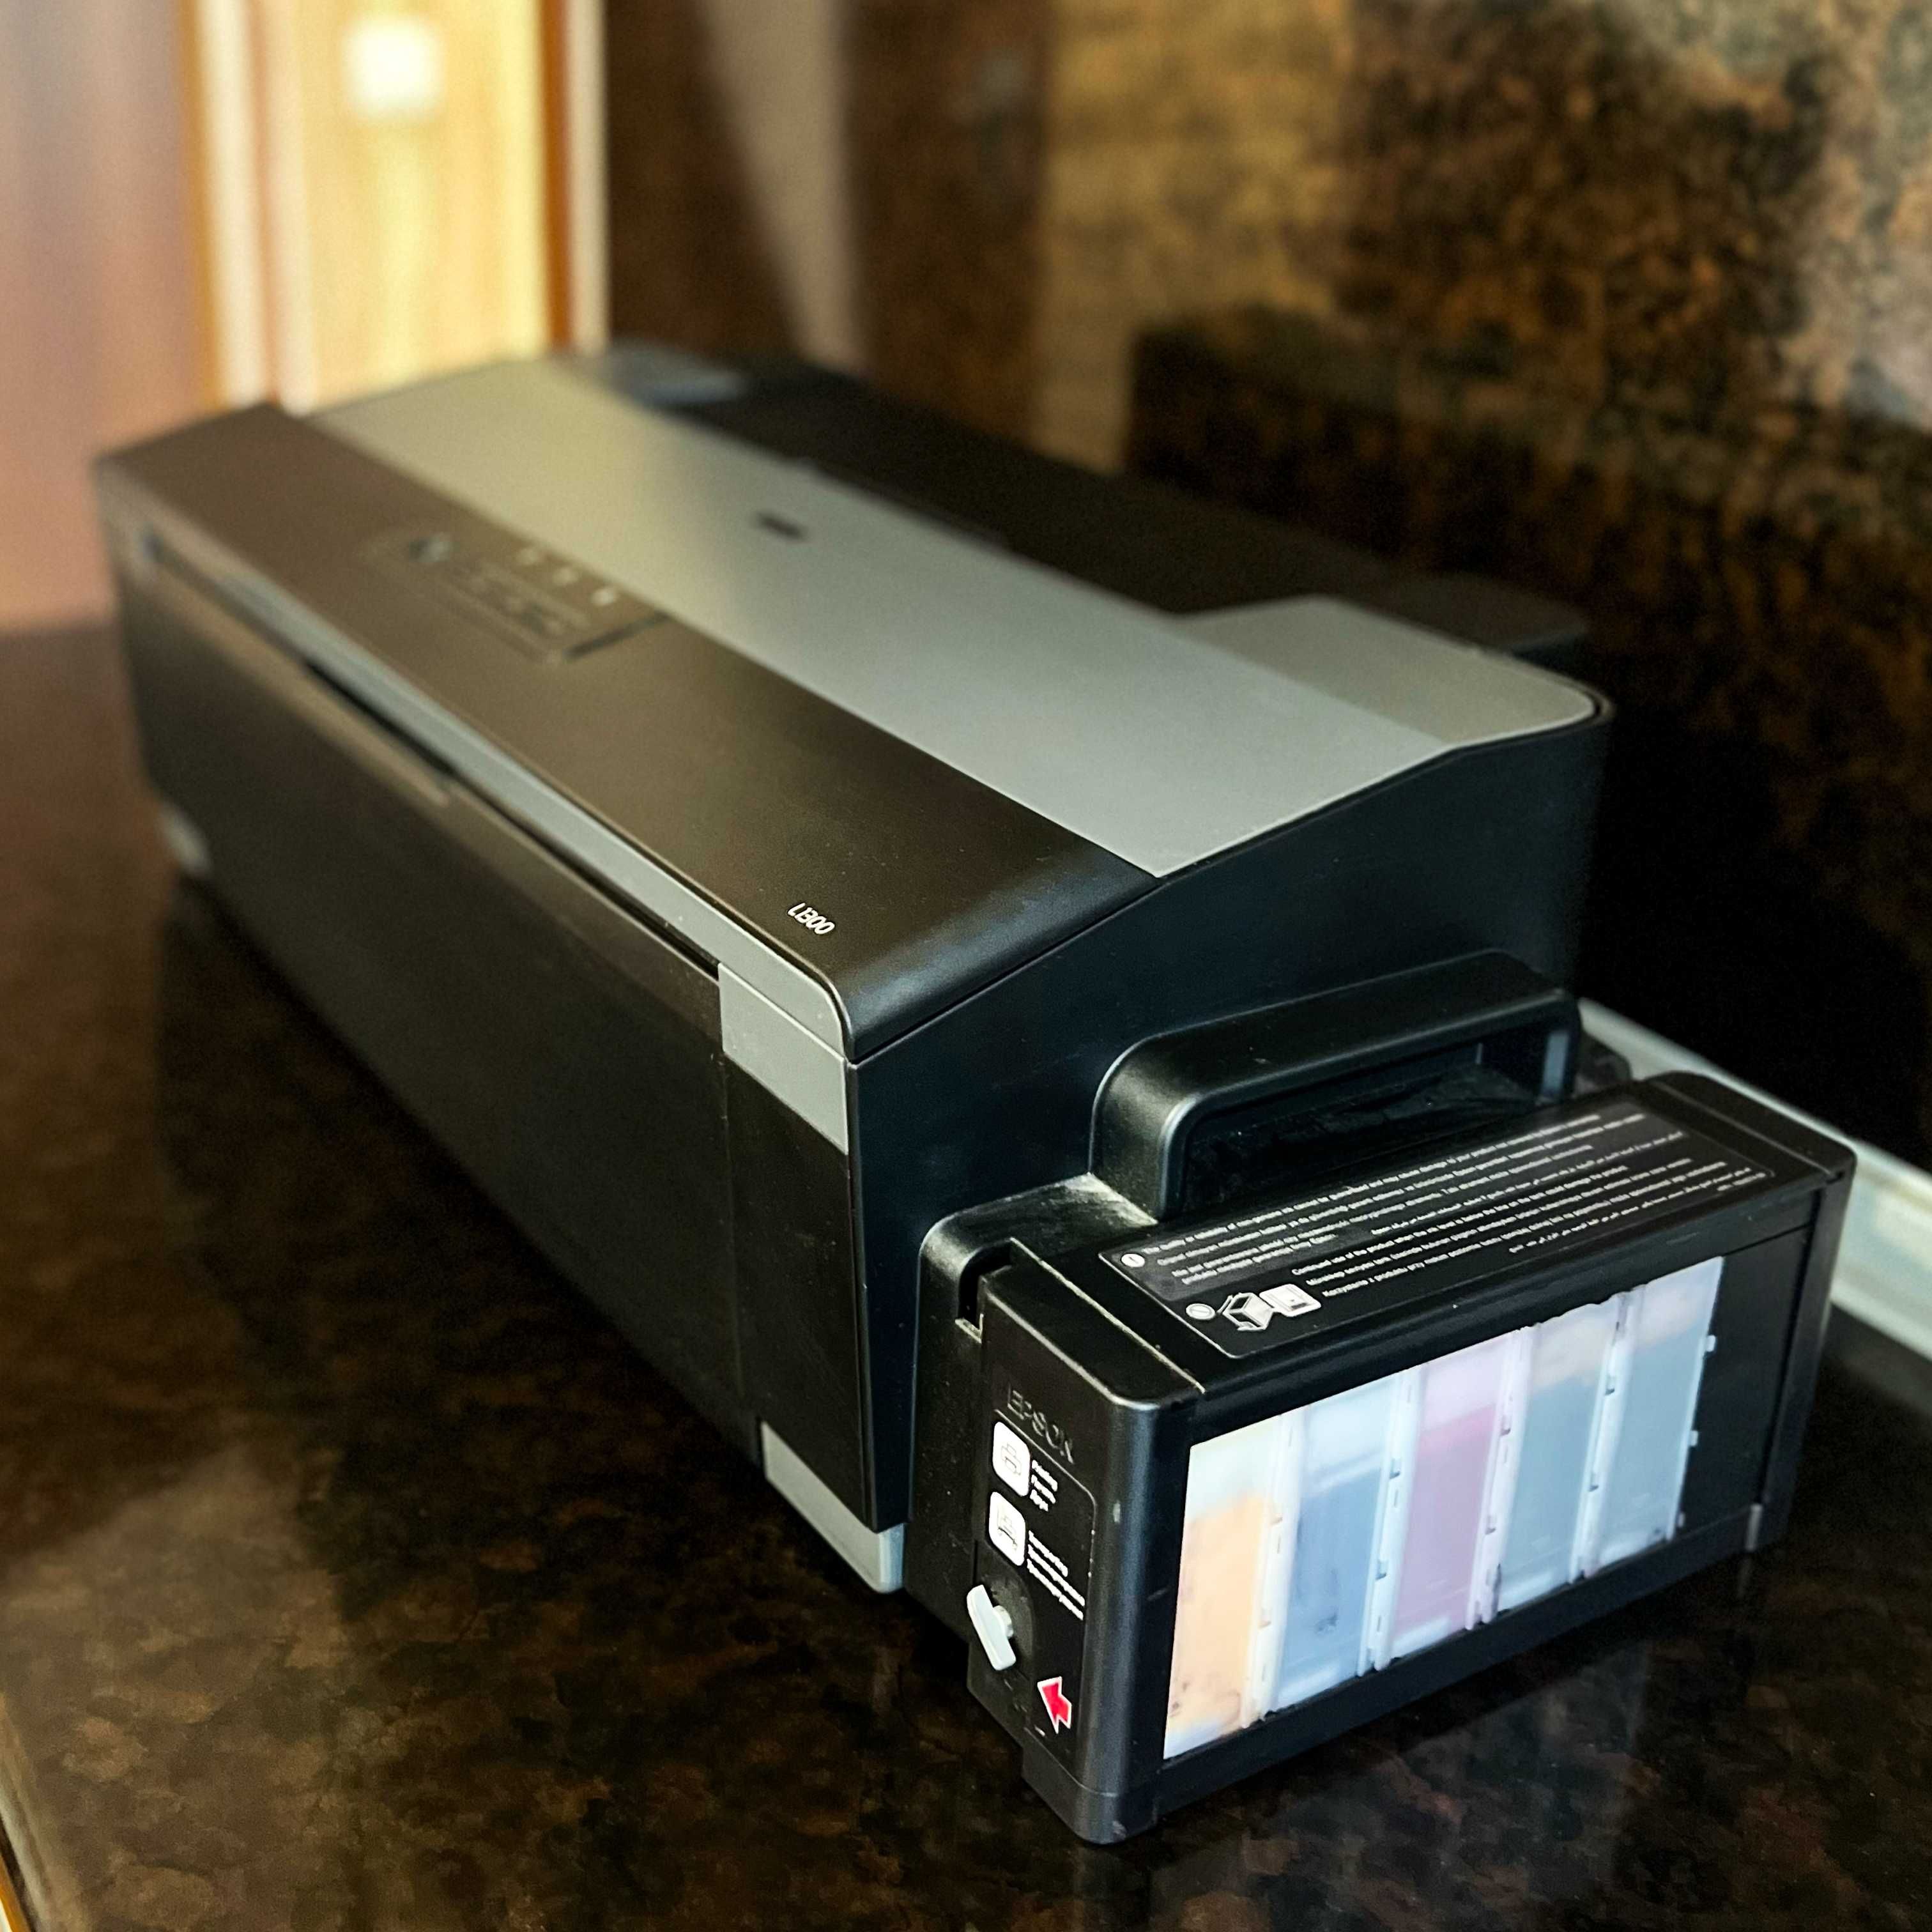 Принтер Epson L1300 (СНПЧ сублімаційні) + В ПОДАРУНОК РІЗАК